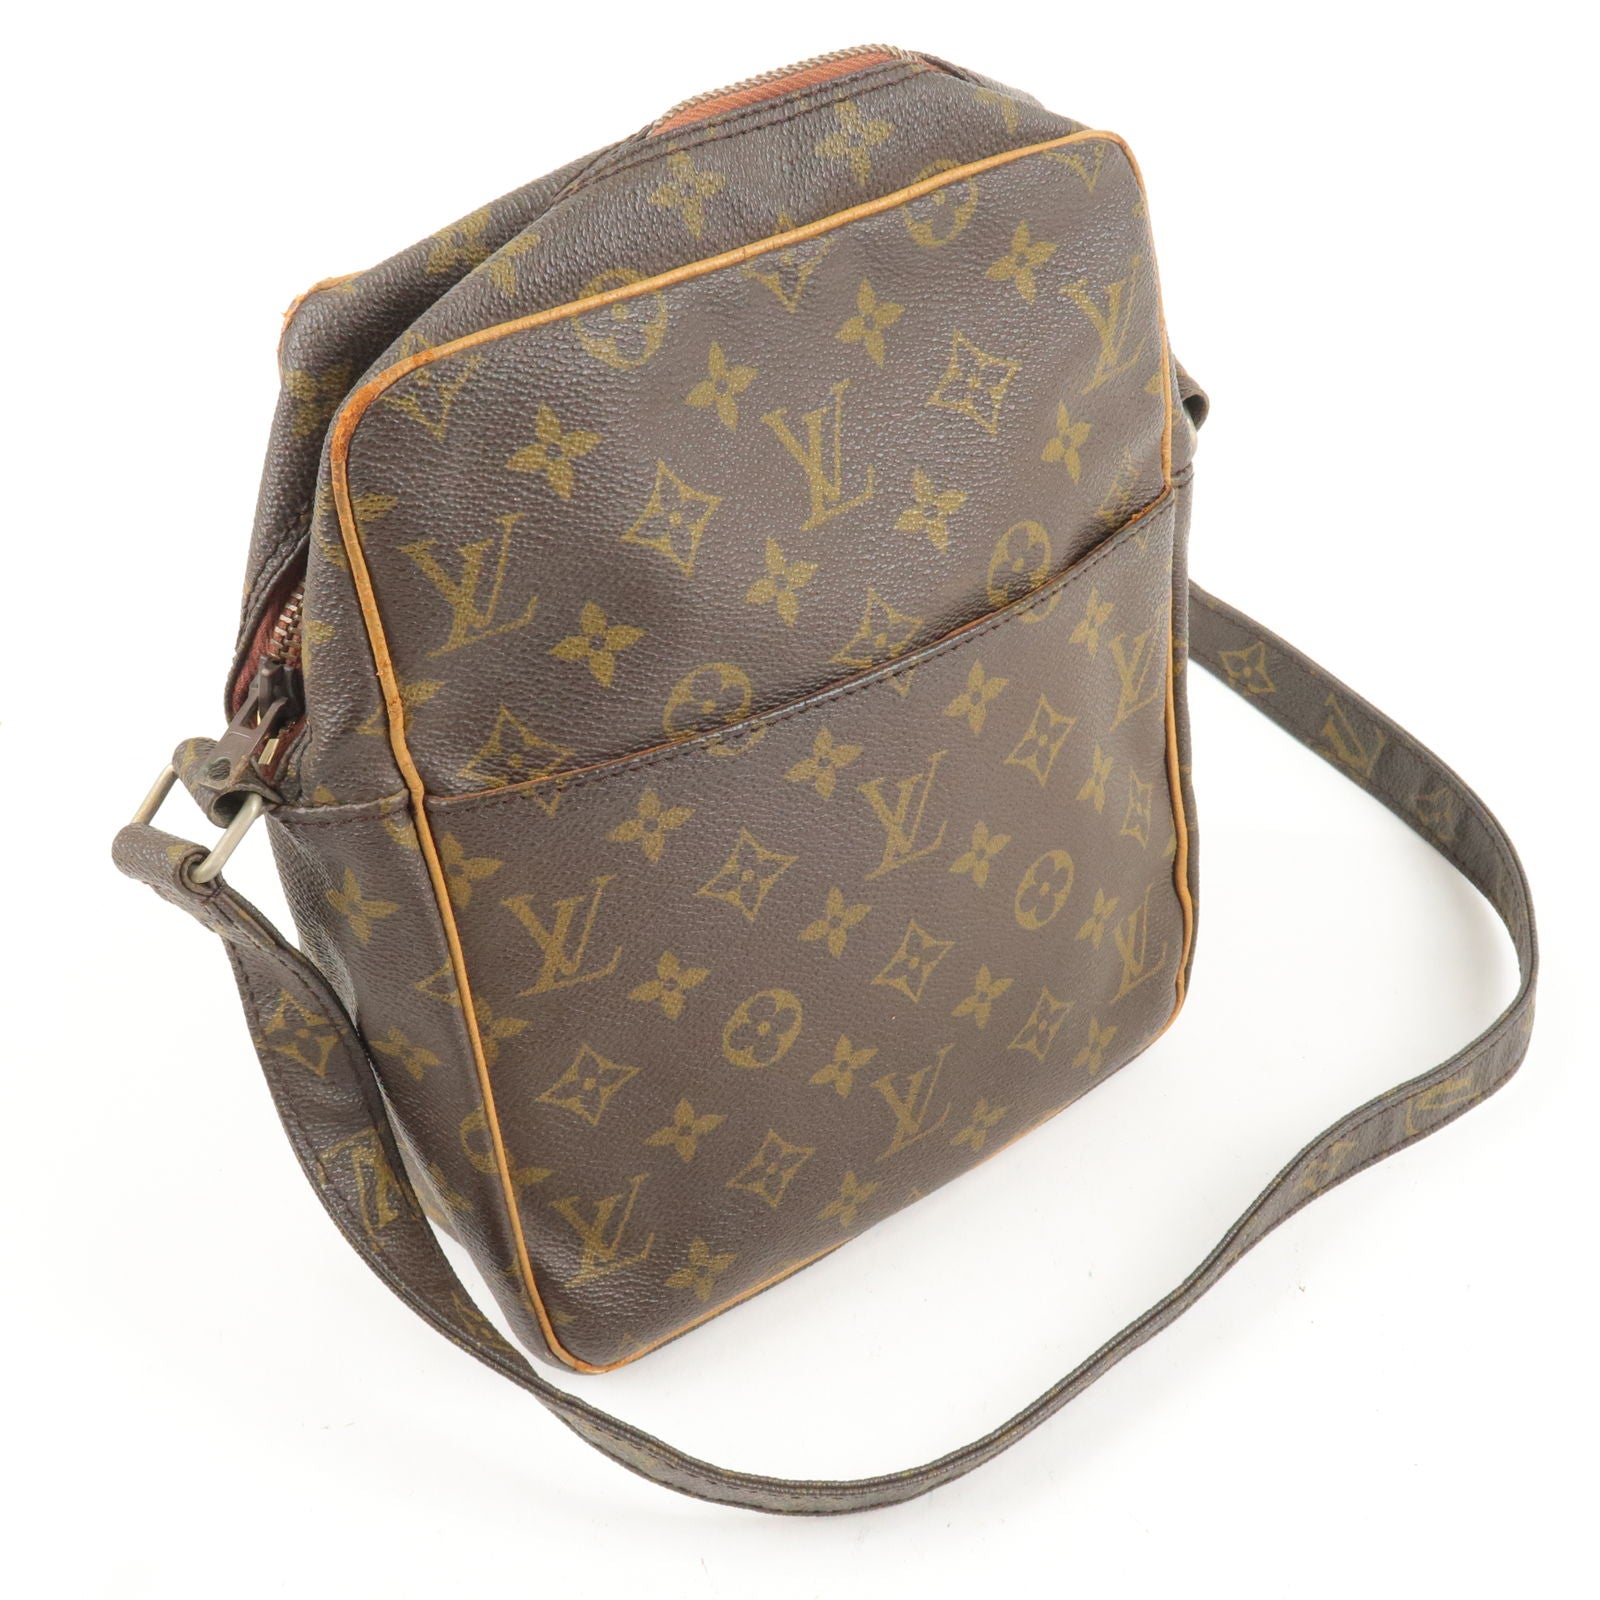 Marceau Bag - Luxury Shoulder Bags and Cross-Body Bags - Handbags